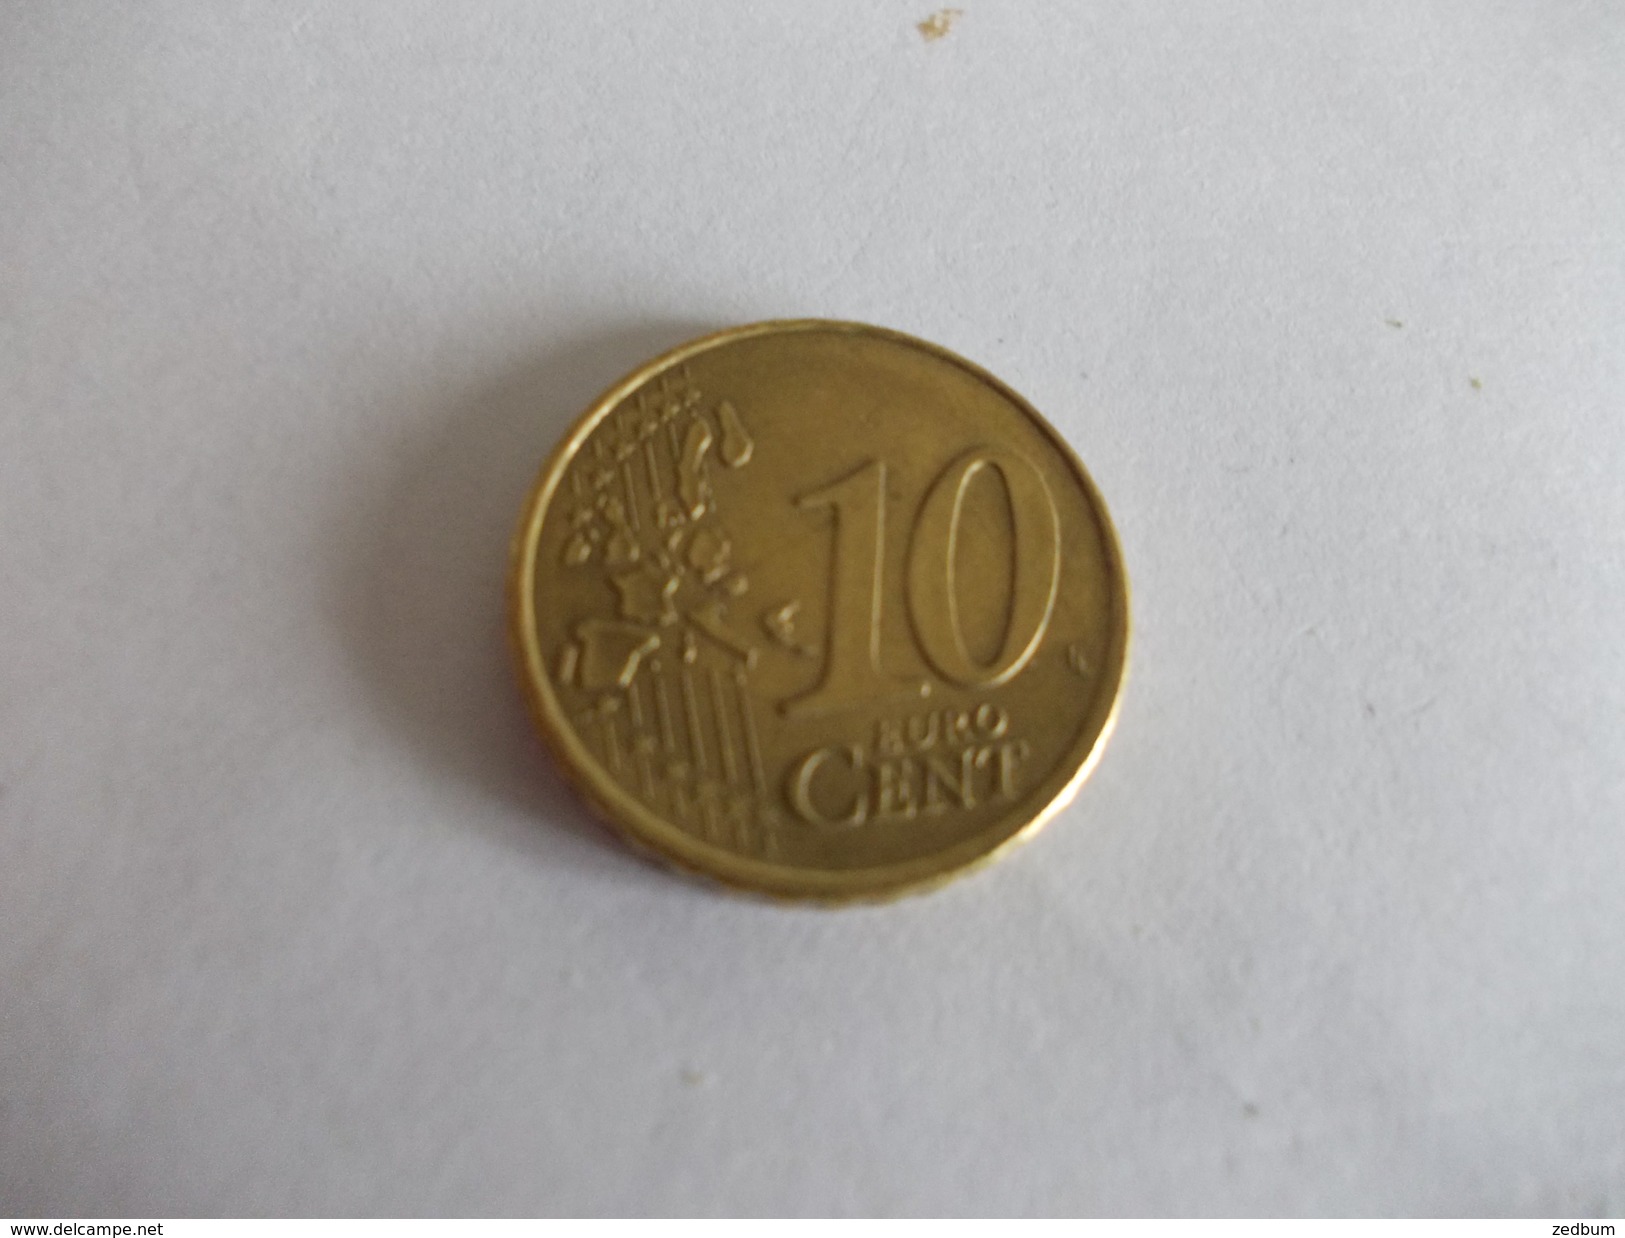 Monnaie Pièce De 10 Centimes D' Euro De Pays Bas Année 2000 Valeur Argus 1 &euro; - Netherlands